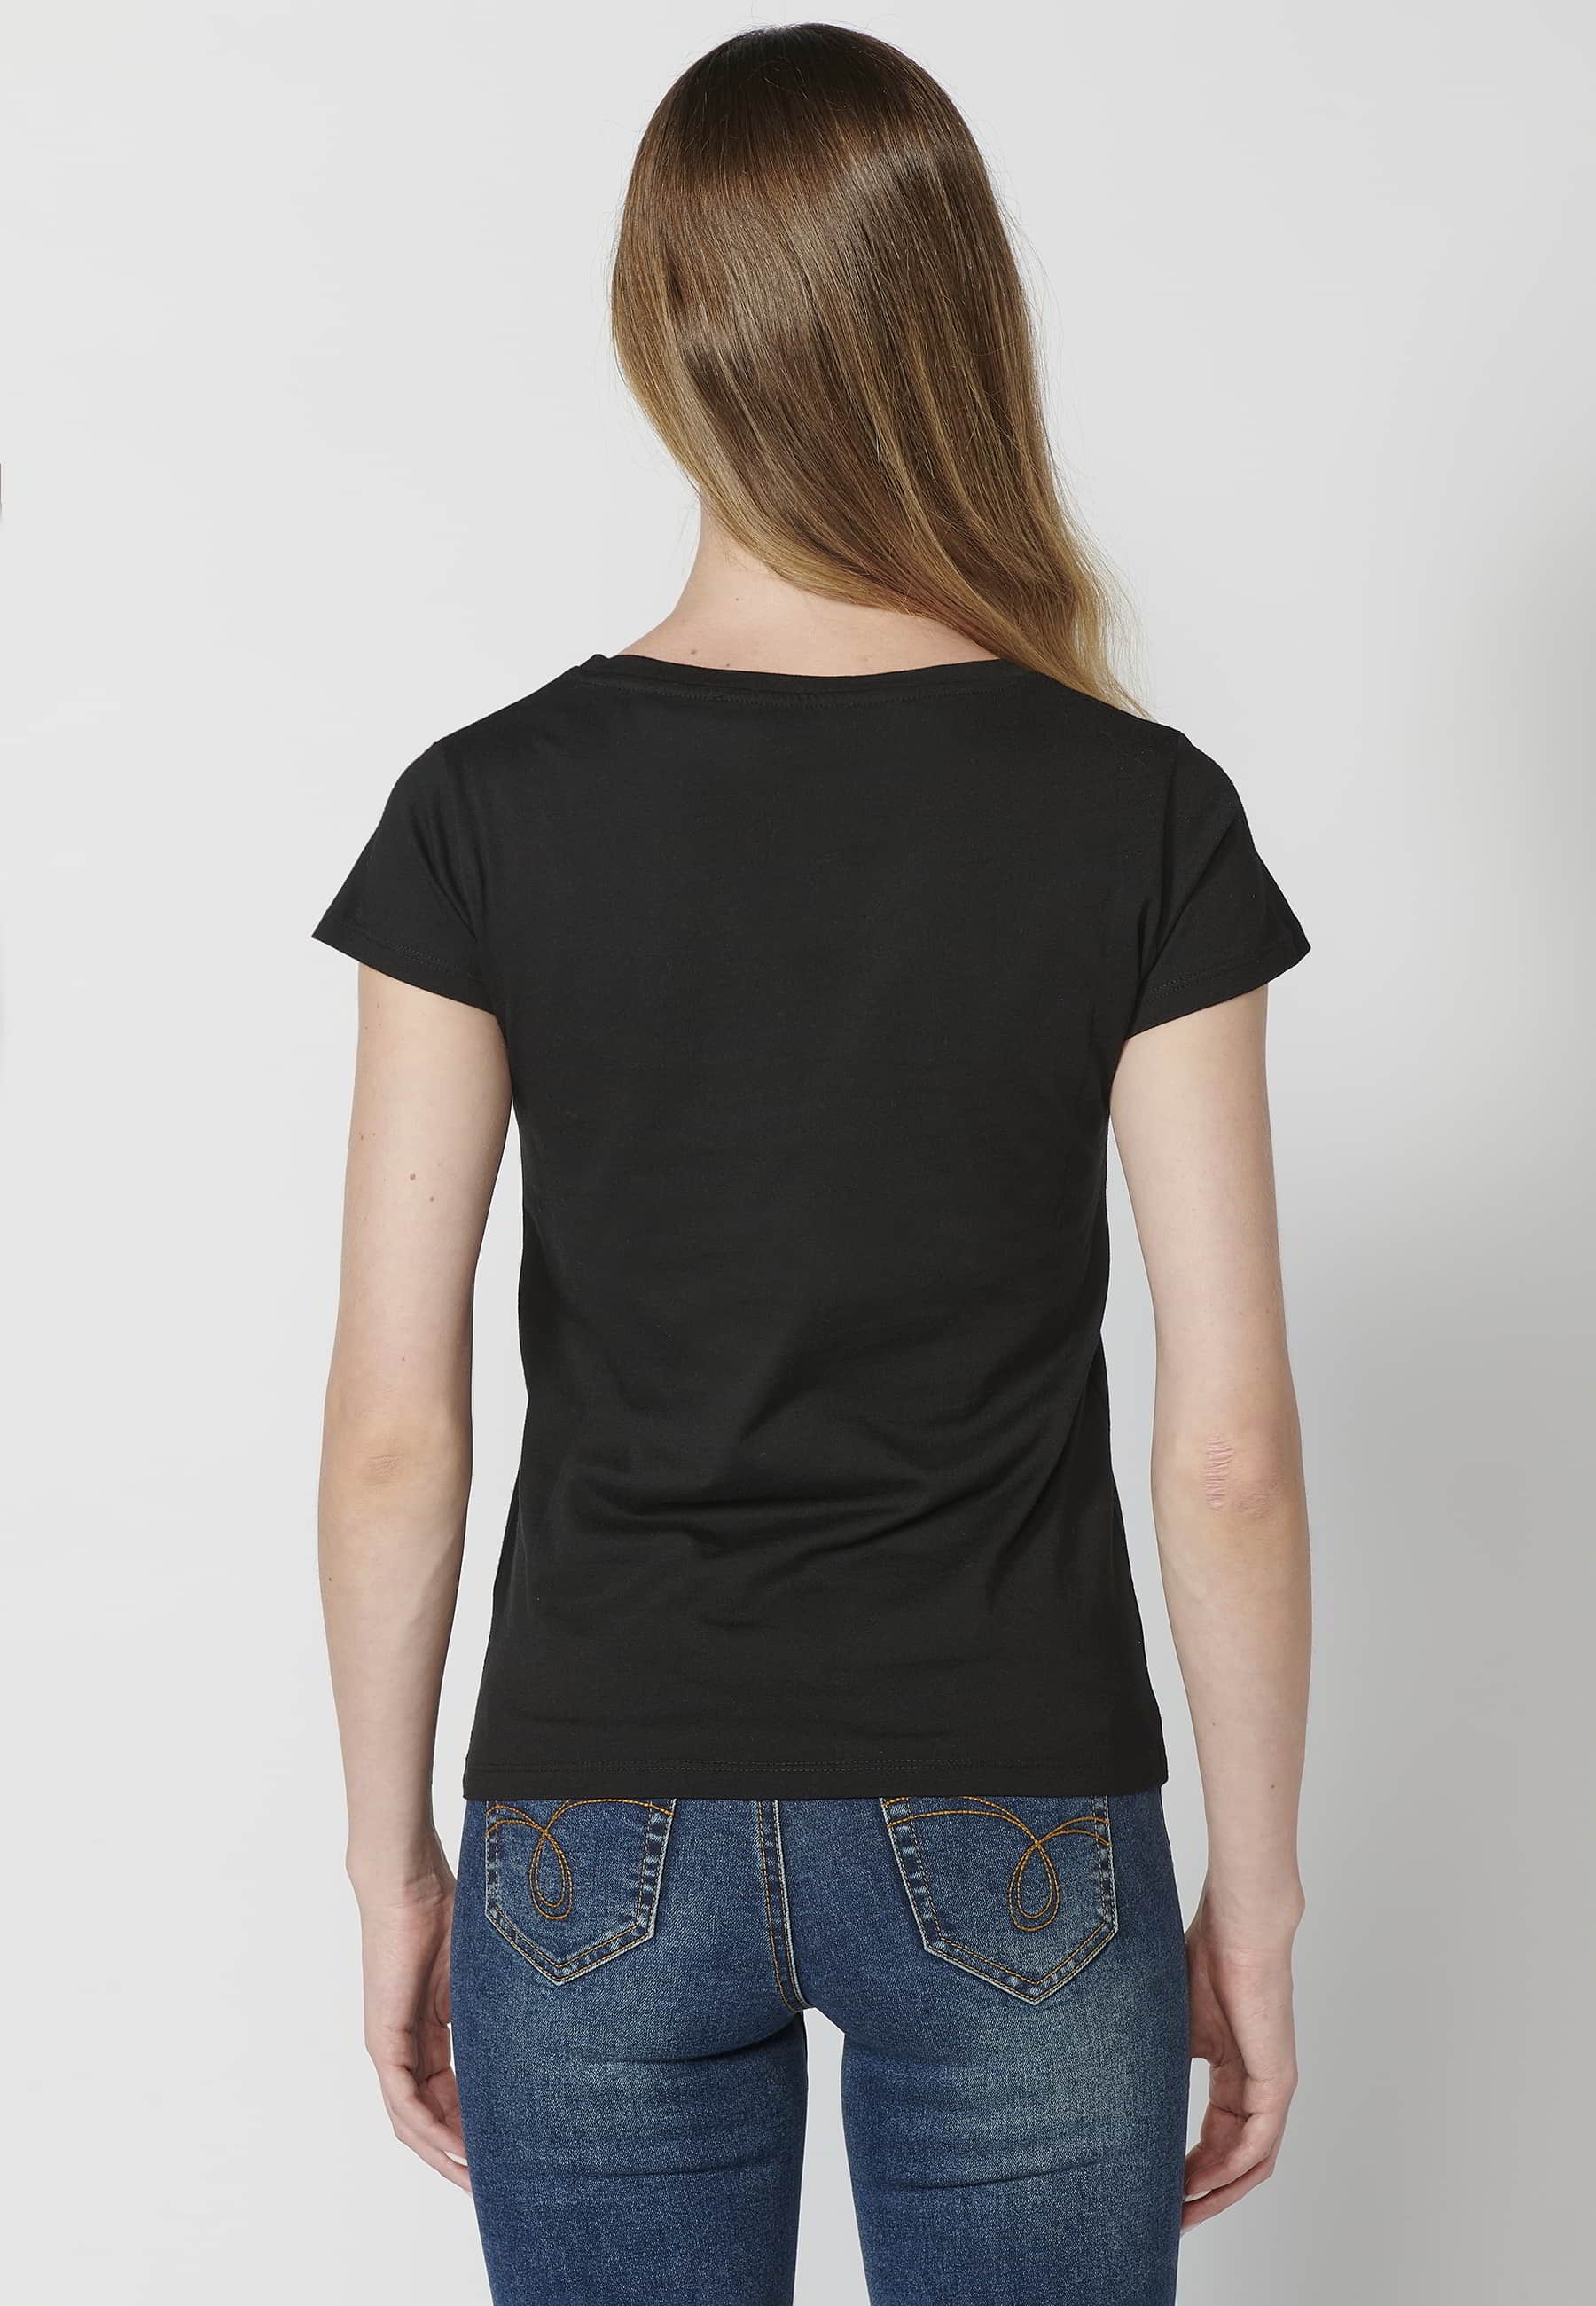 Camiseta de manga corta de algodón cuello redondo estampado frontal mariposa color negro para mujer 5